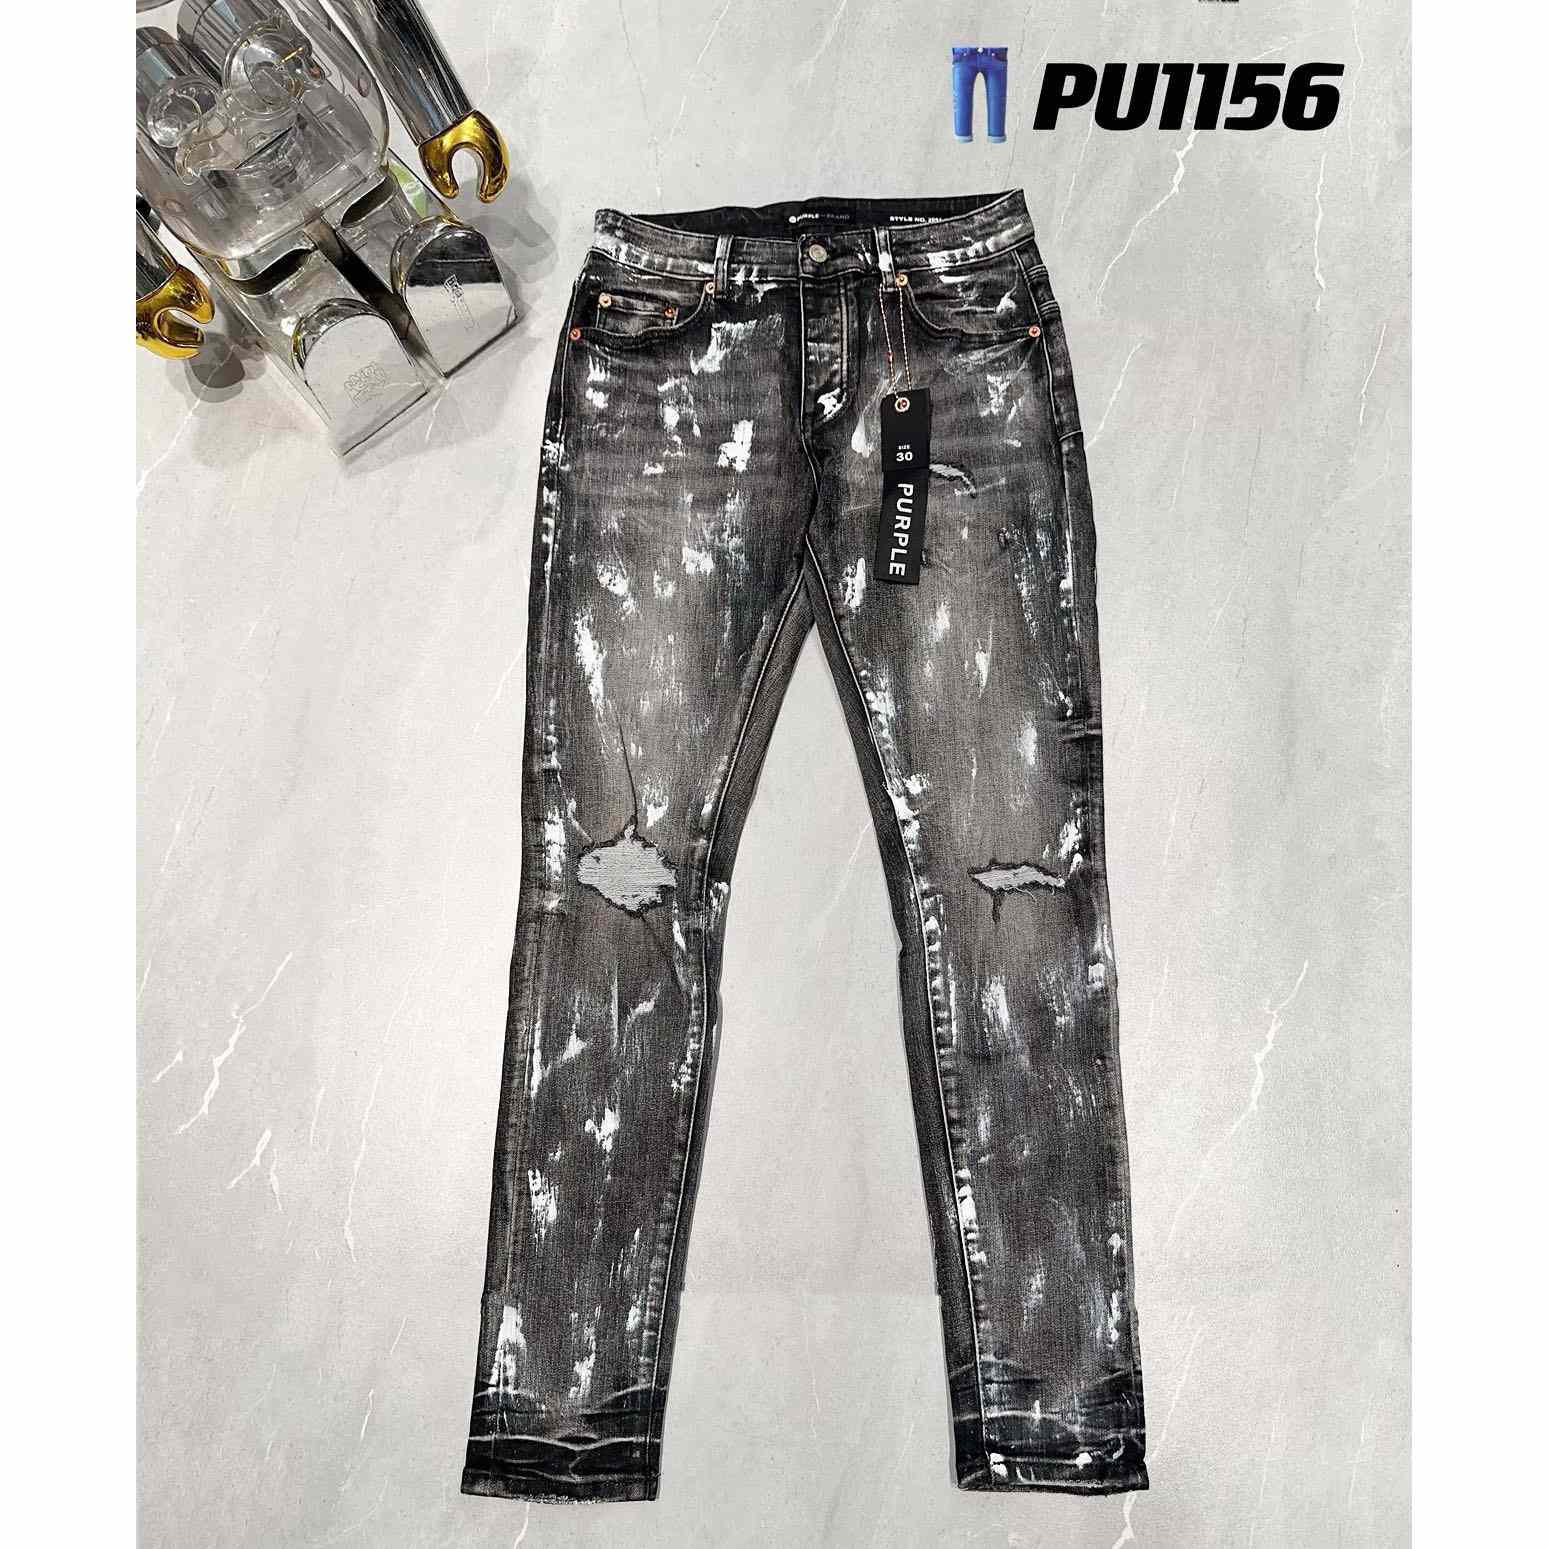 Purple-Brand Jeans   PU1156 - DesignerGu